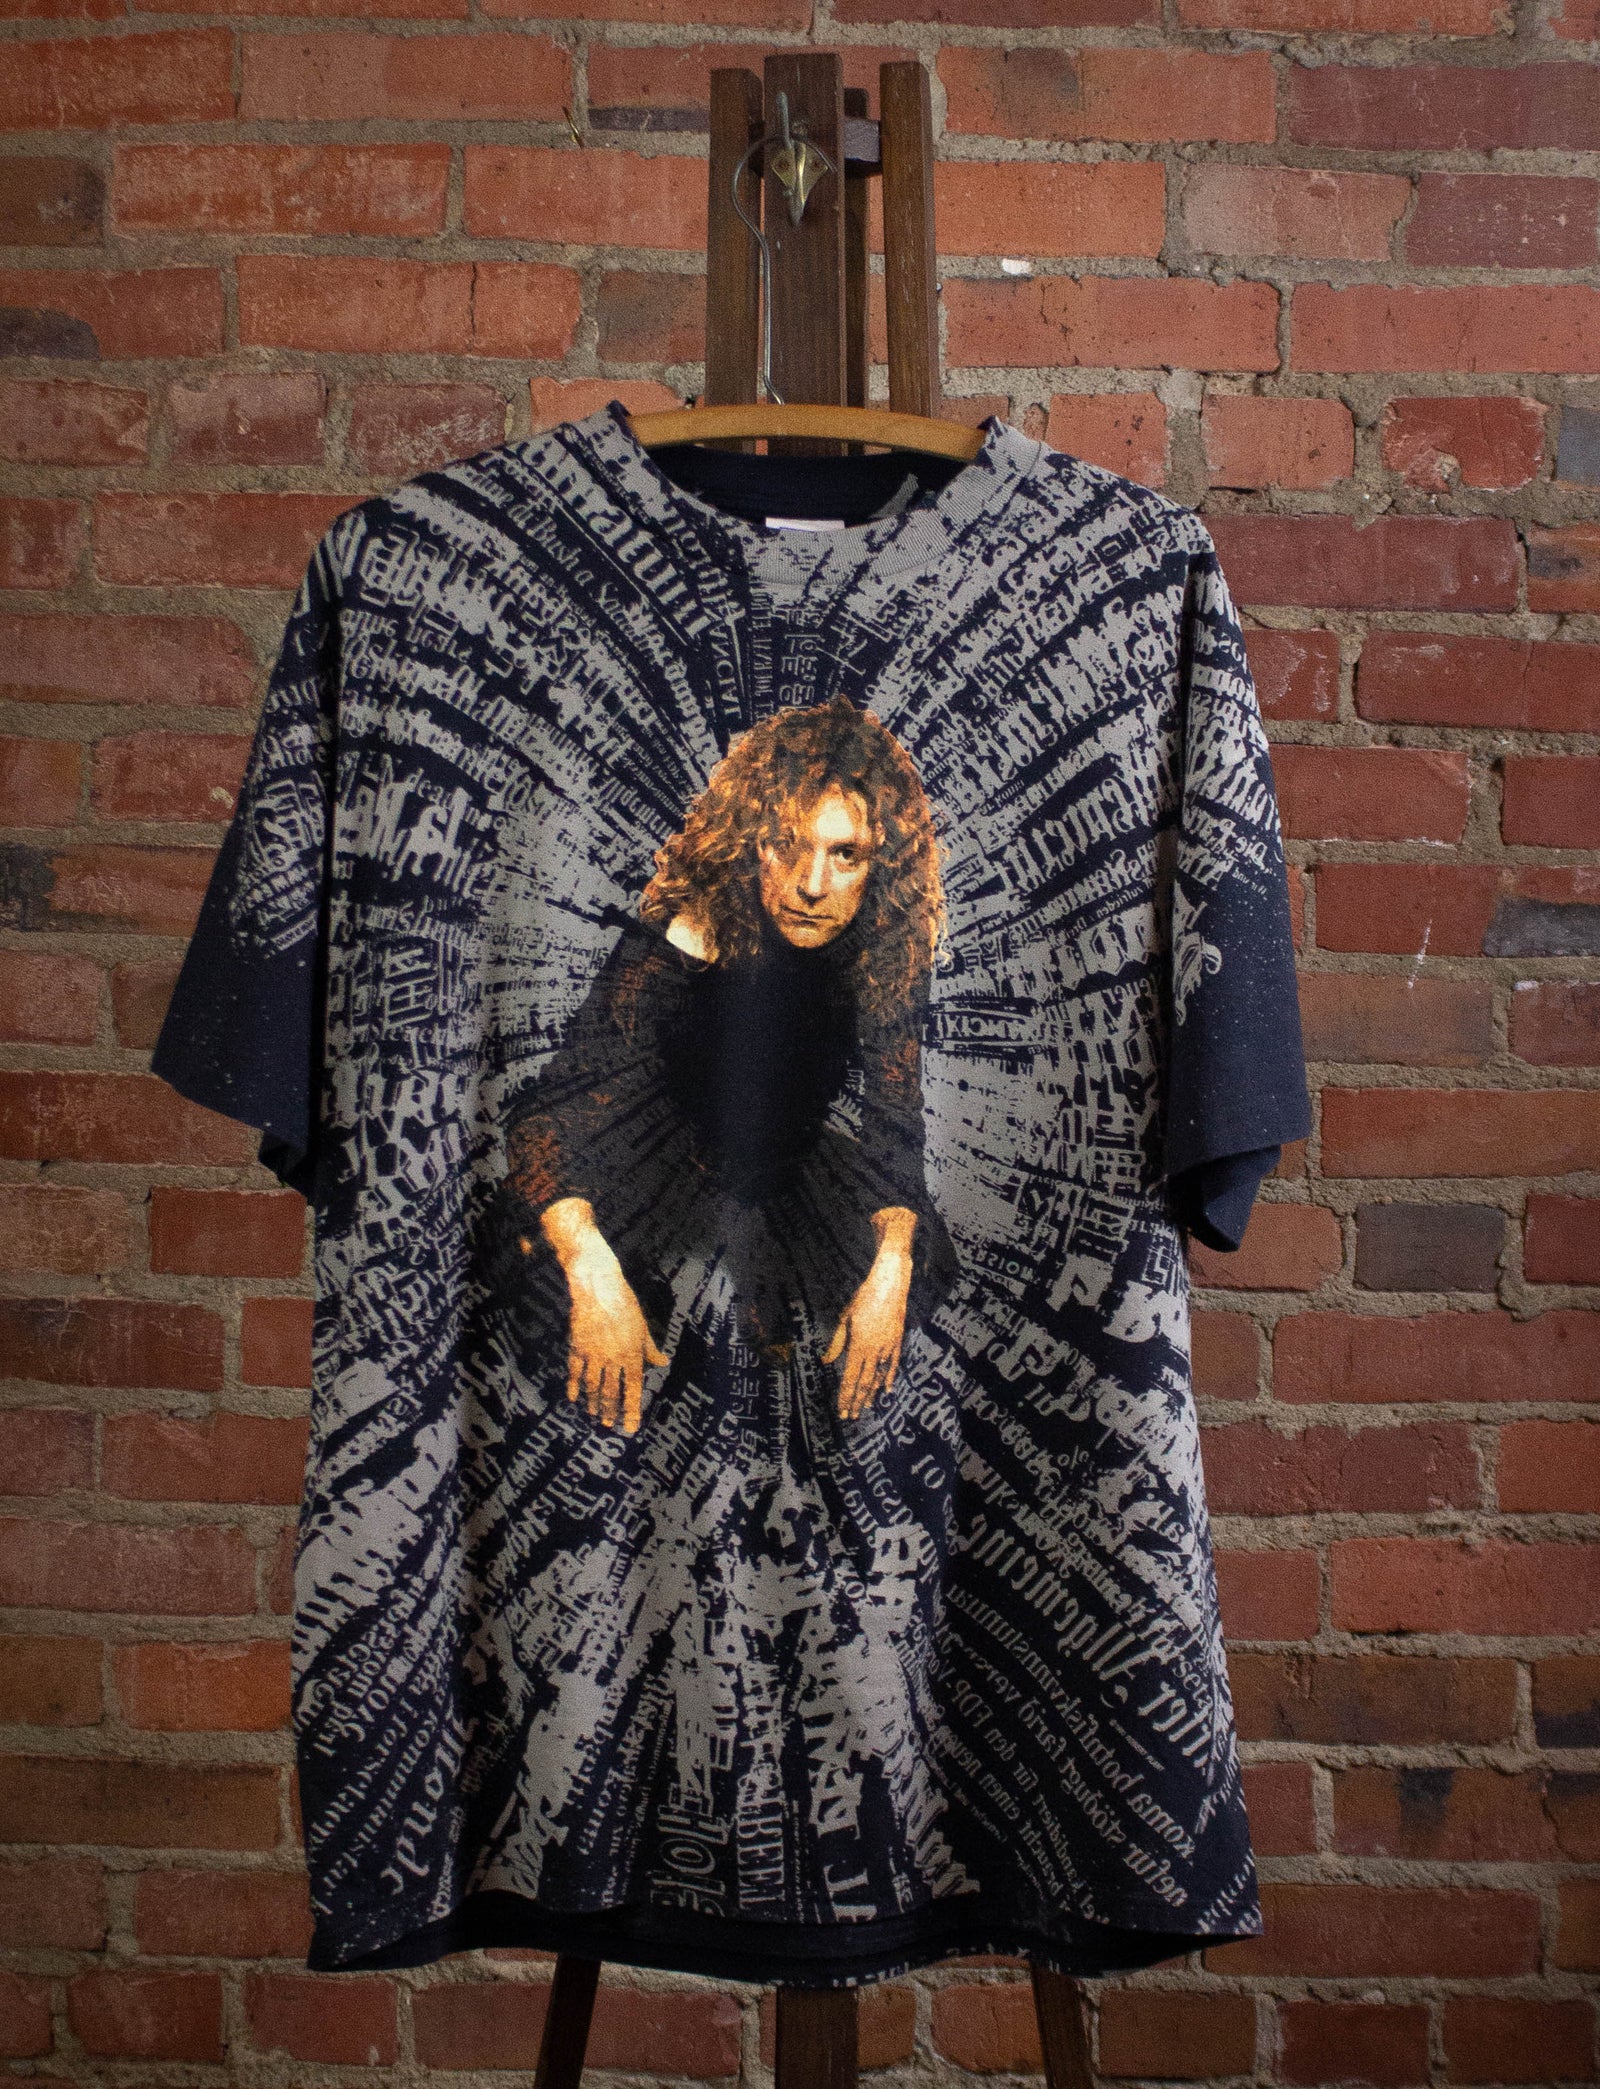 Vintage Robert Plant of Nations Over Print Concert T Shirt 19 – Black